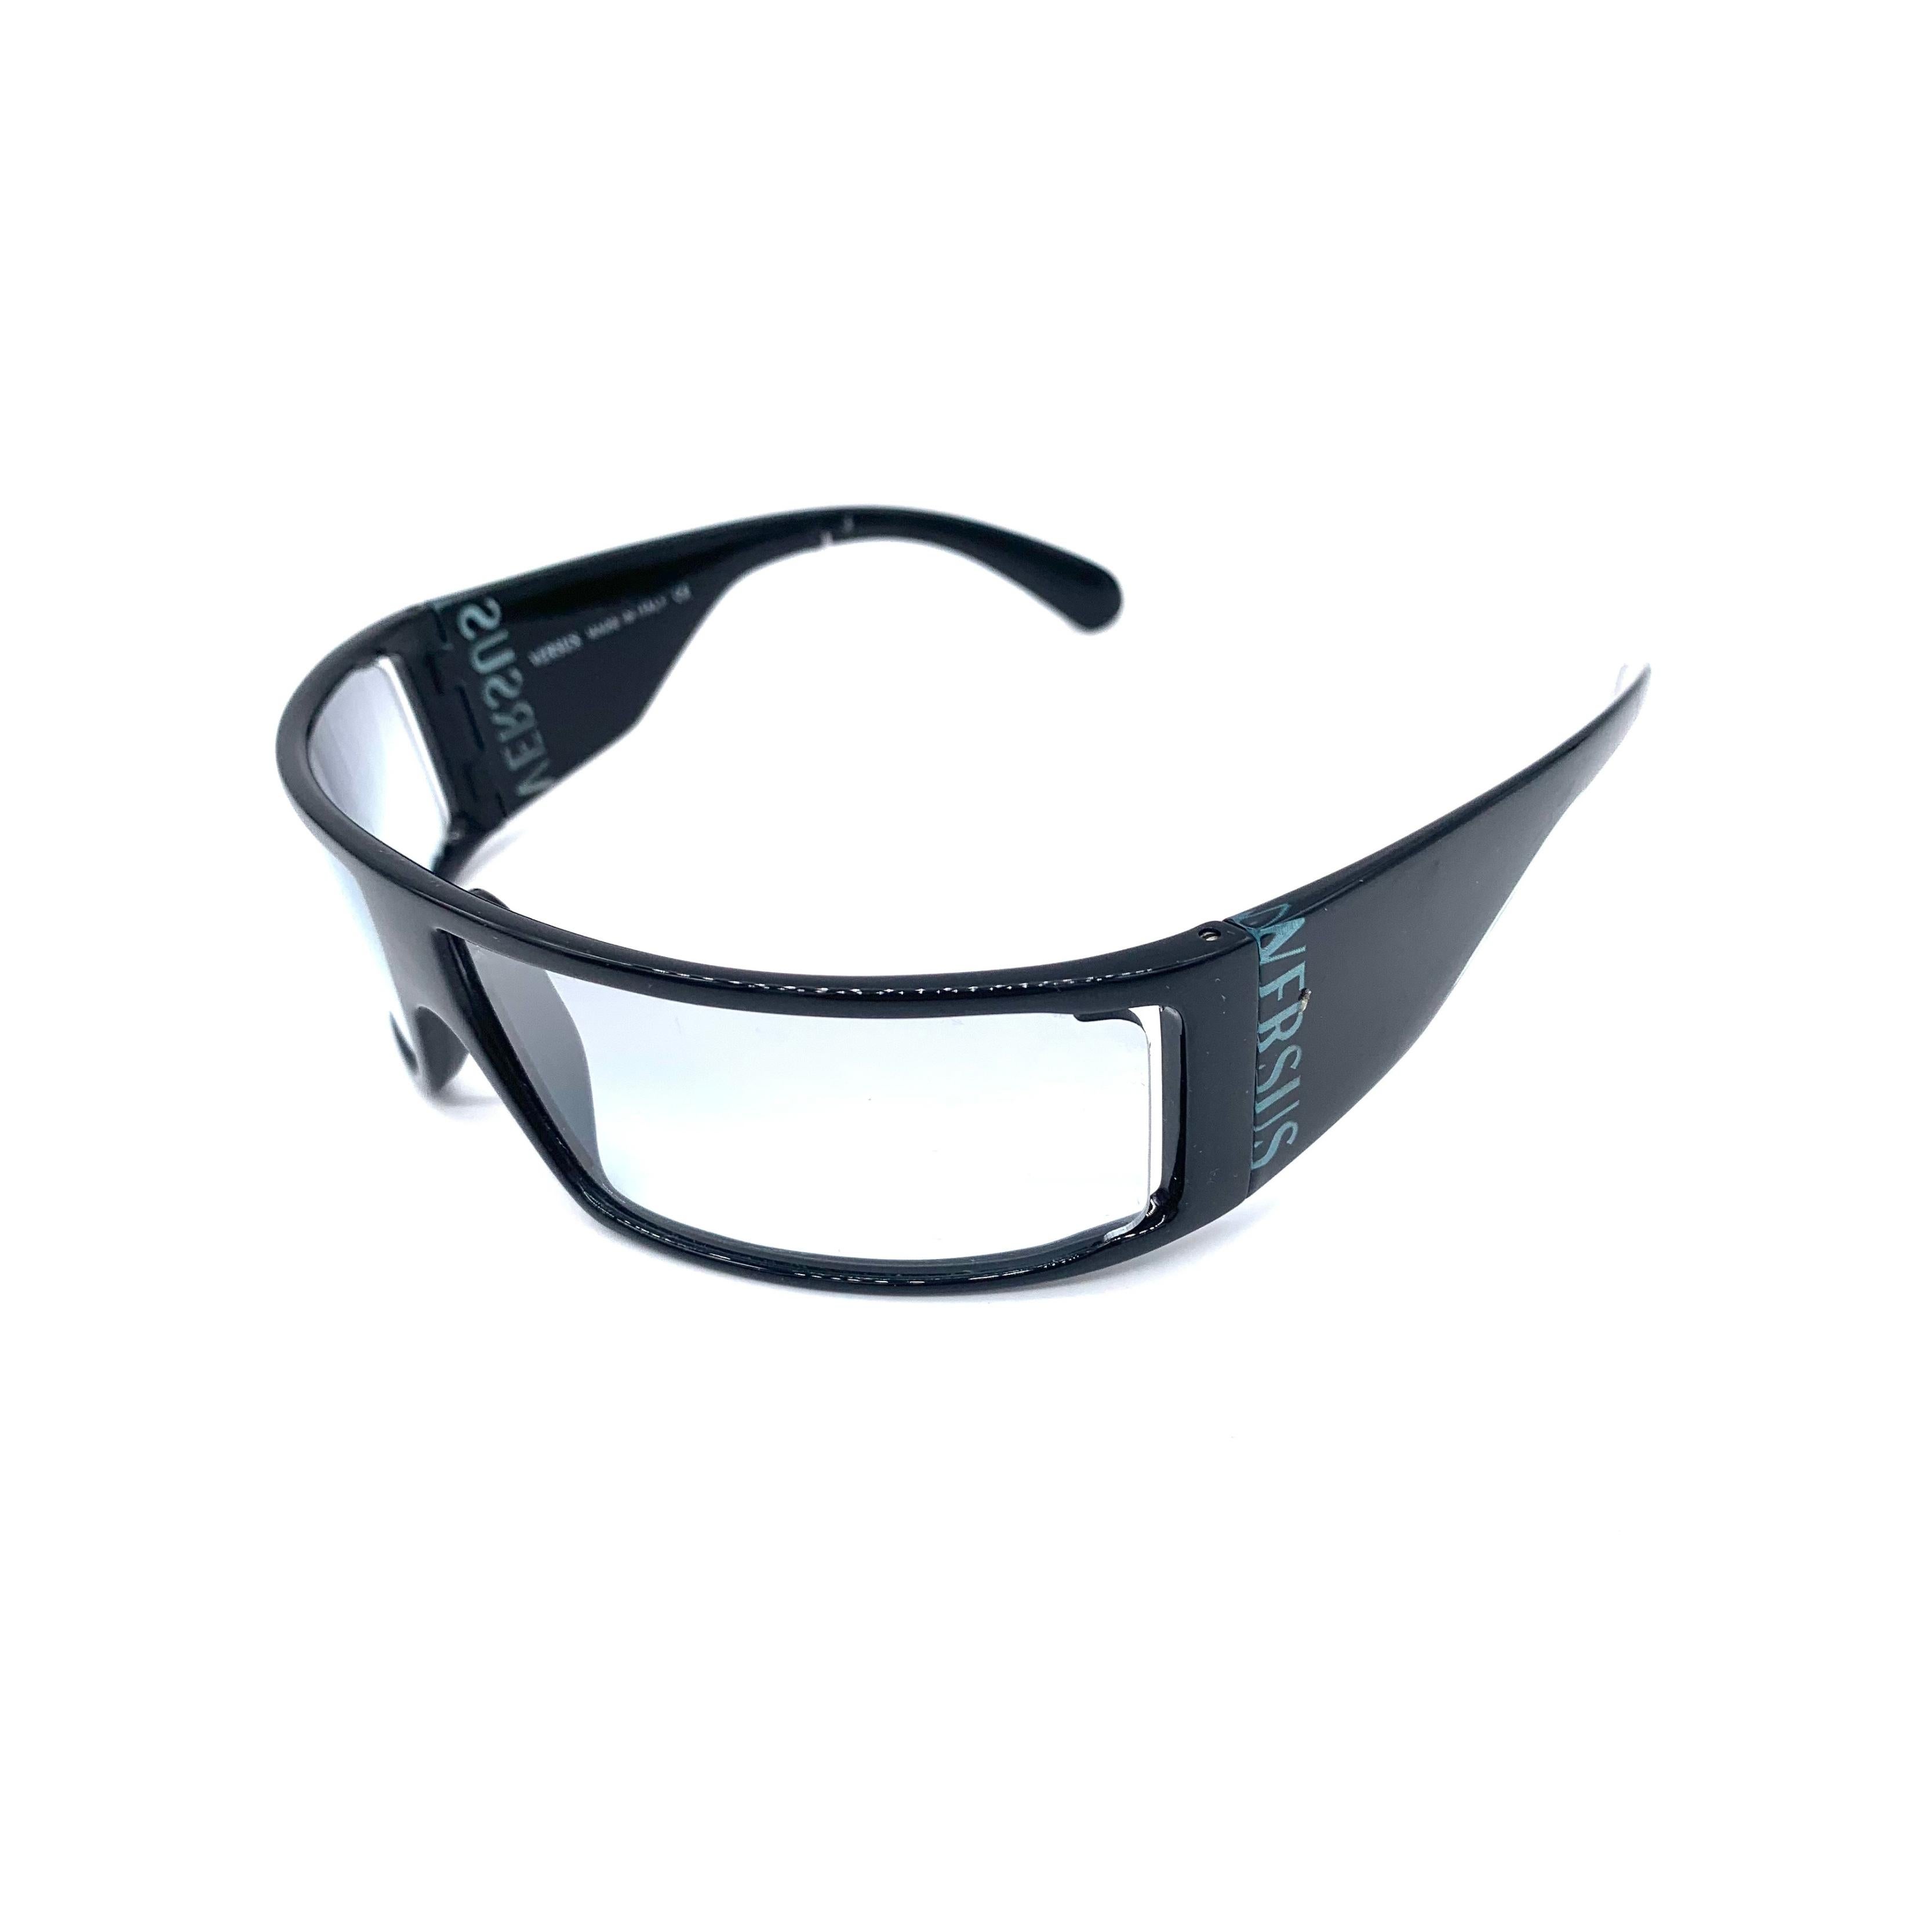 Ces lunettes de soleil Versus en acétate, classiques des années 1990, sont dotées d'une large monture noire et d'un verre transparent. Le logo Versus emblématique est placé discrètement sur le côté, ce qui en fait une déclaration de mode